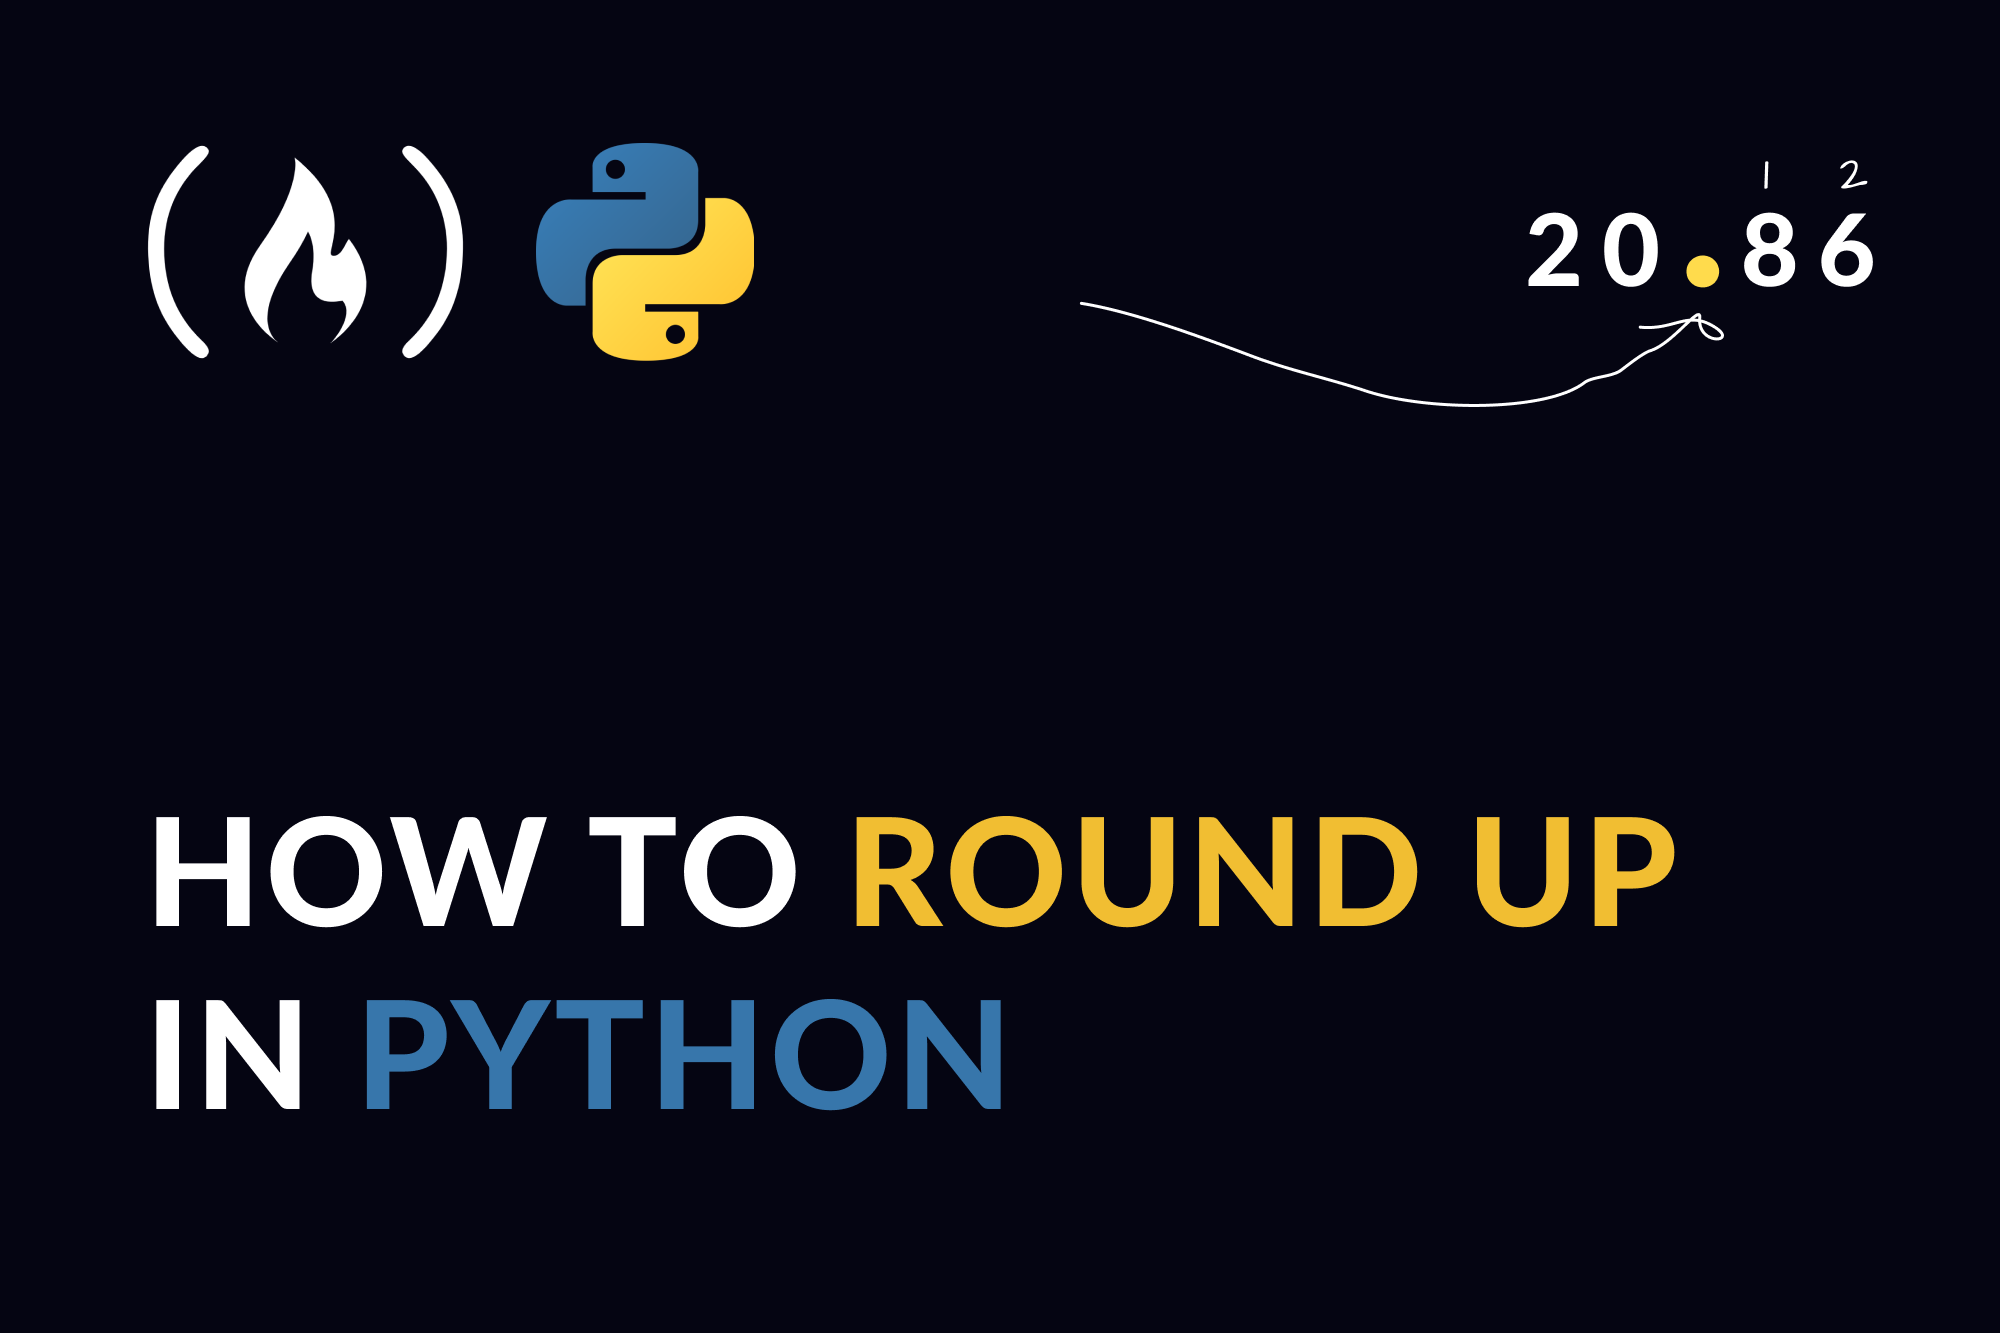 如何在 Python 中四舍五入到小数点后 2 位